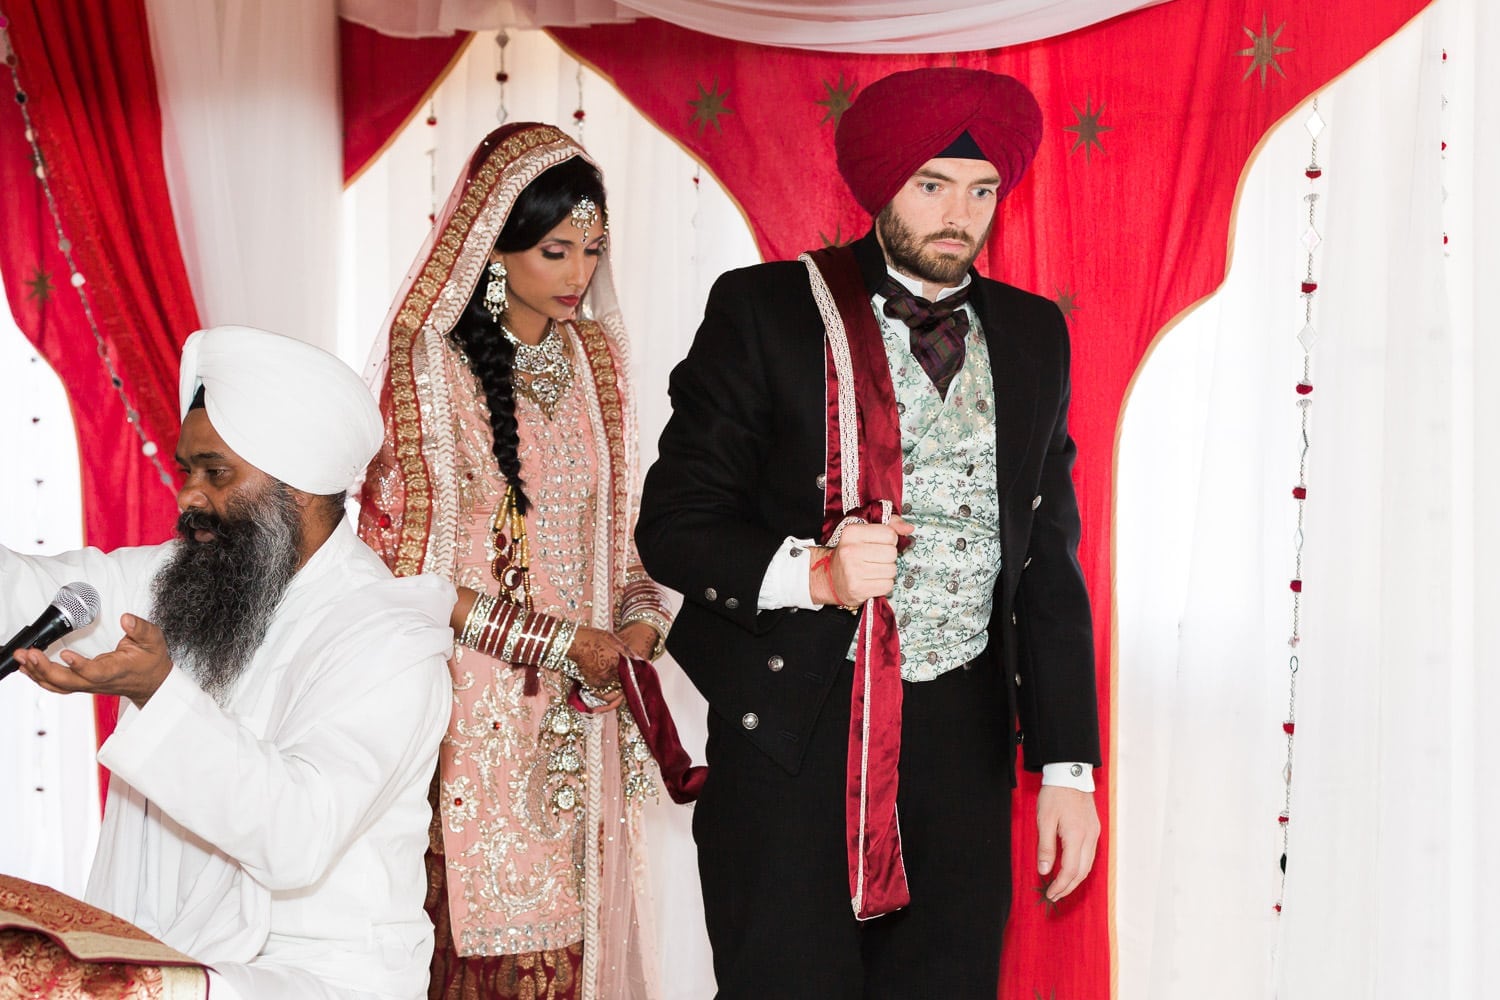 Indian and Norwegian wedding | Vancouver Indian wedding photographer